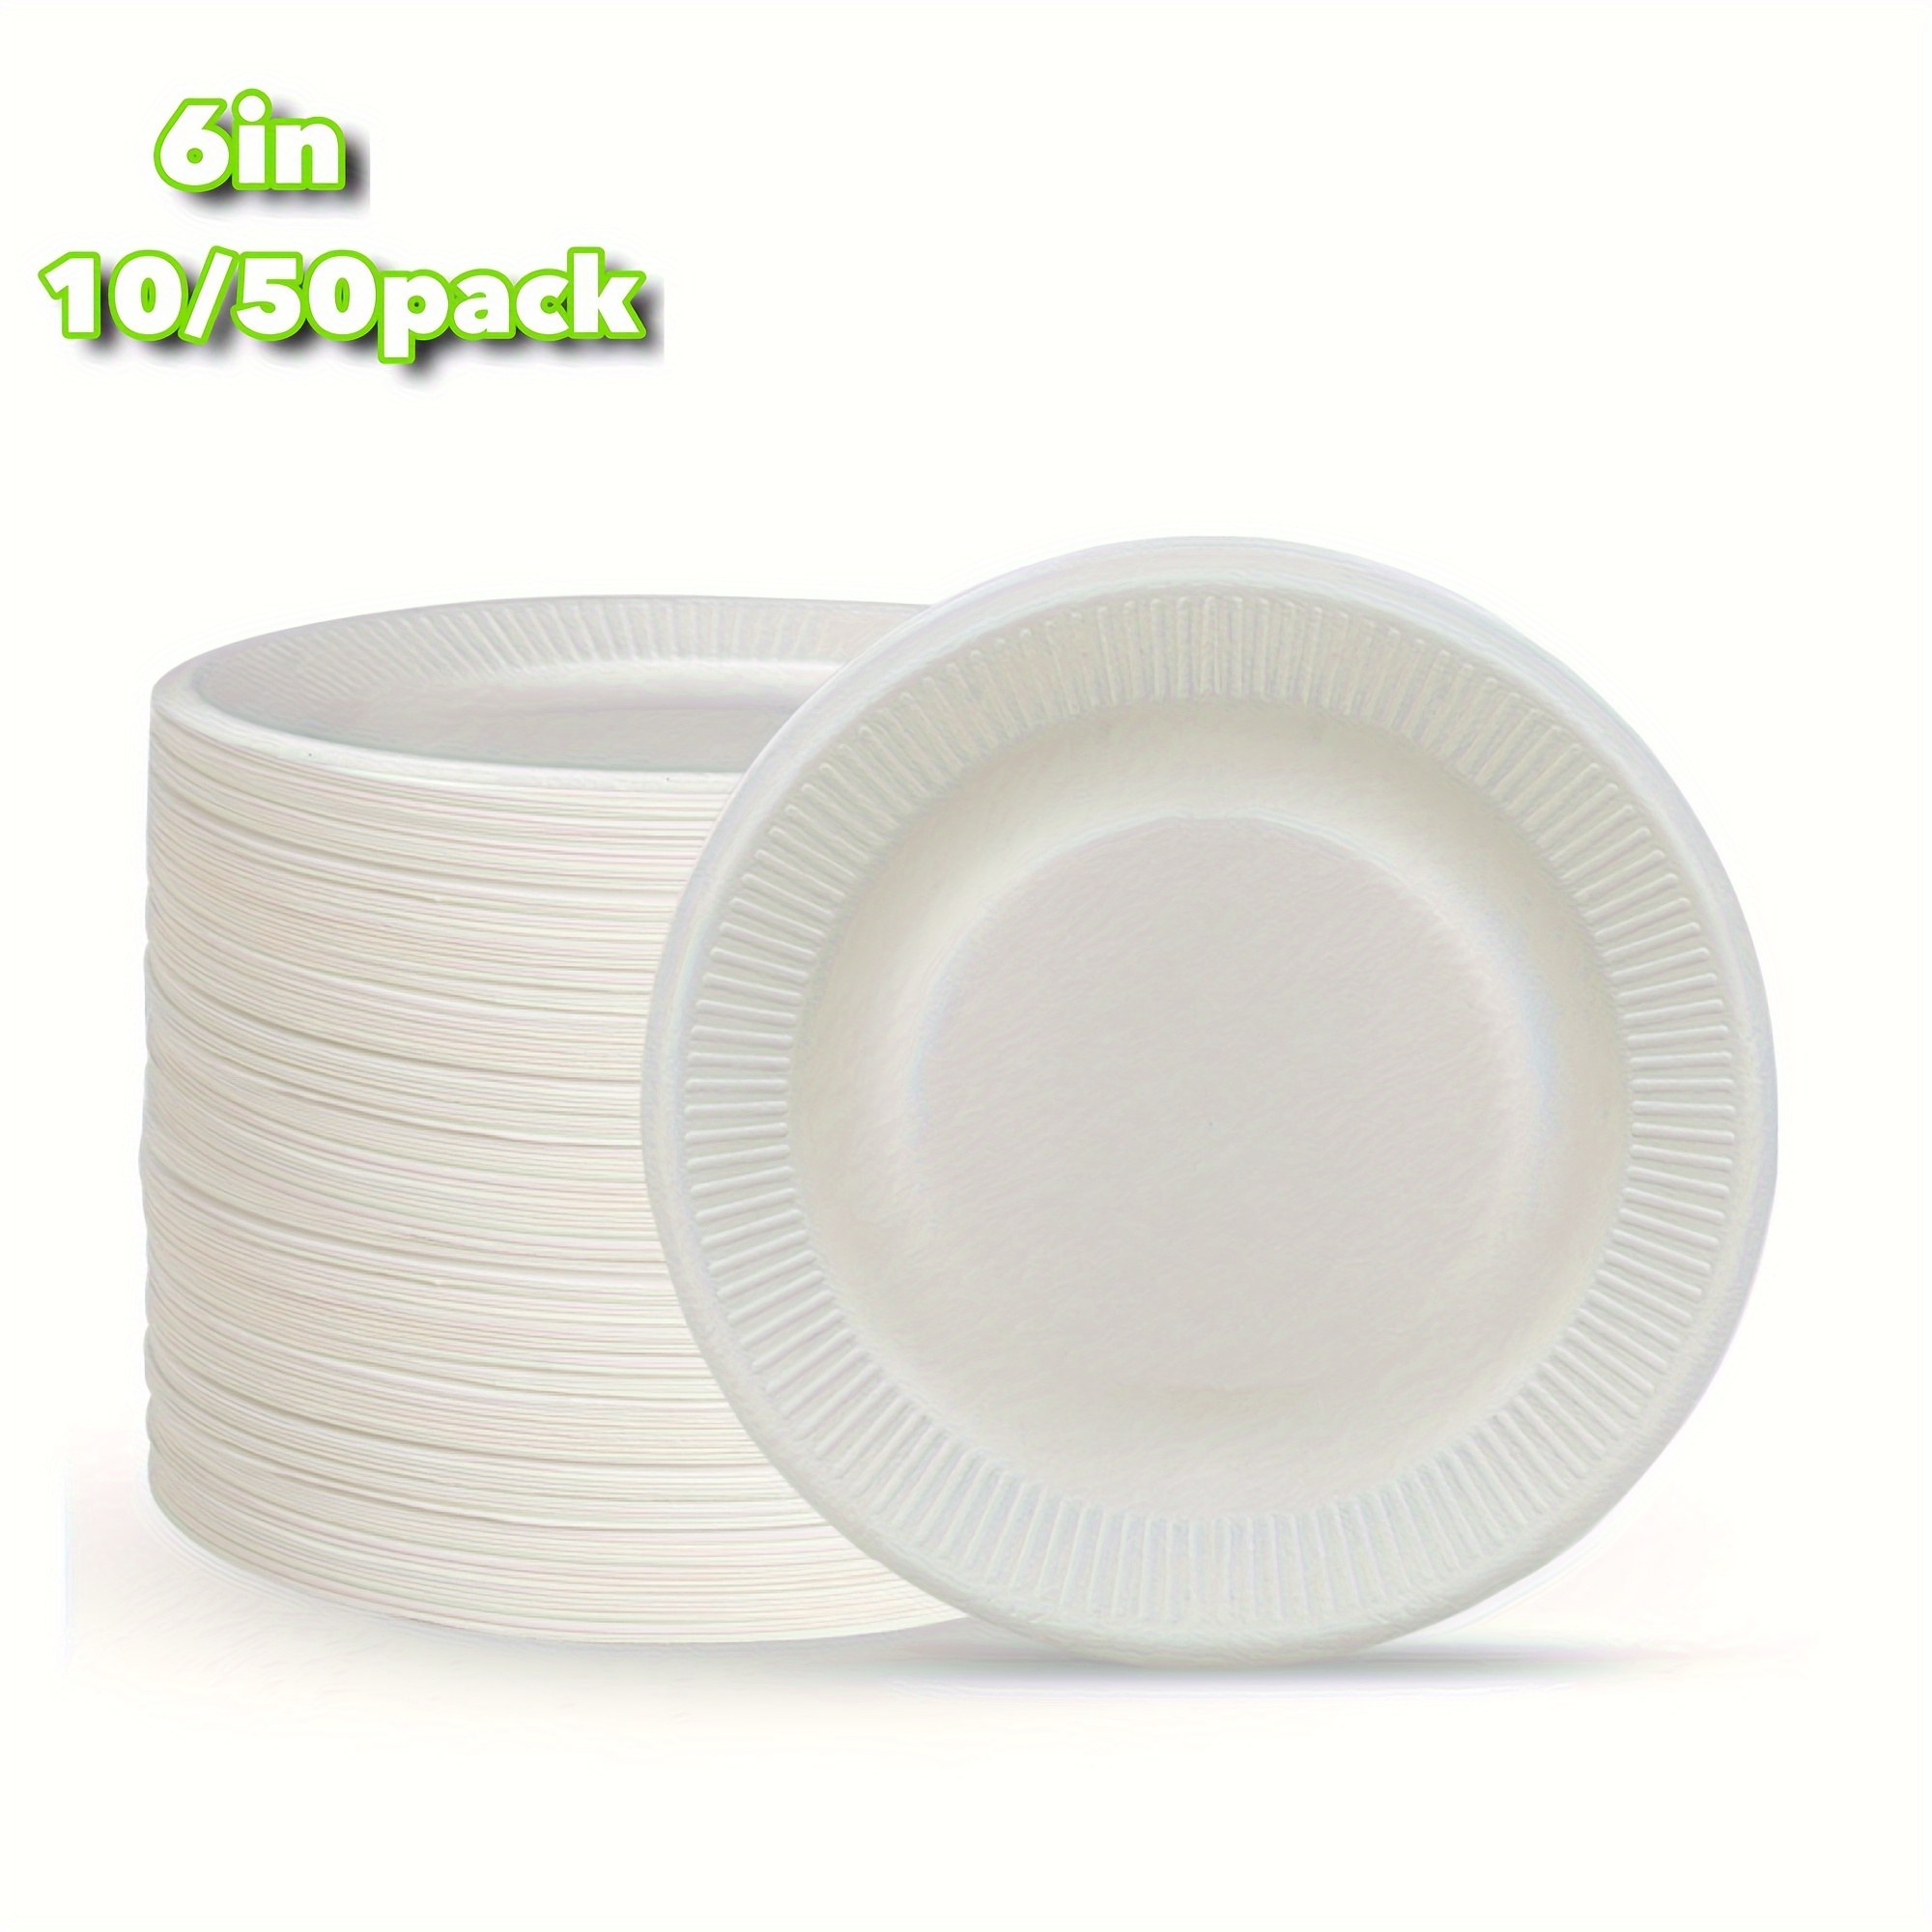 [300 unidades] Platos desechables blancos sin recubrimiento de 6 pulgadas,  platos decorativos de papel para manualidades